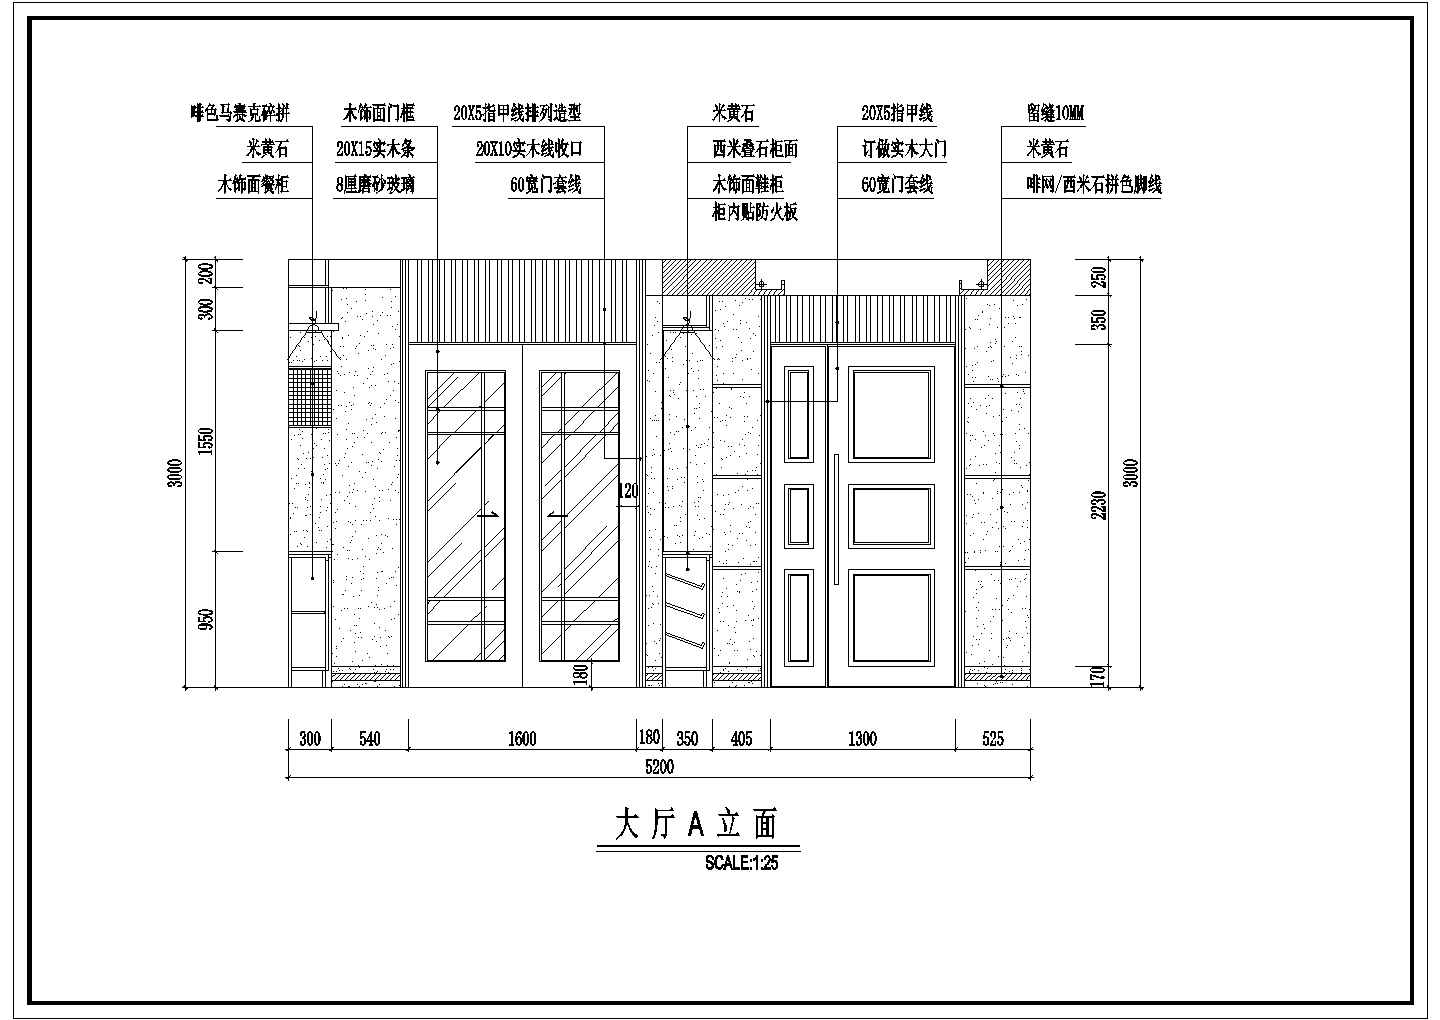 深圳市某地某小区户型装修施工图